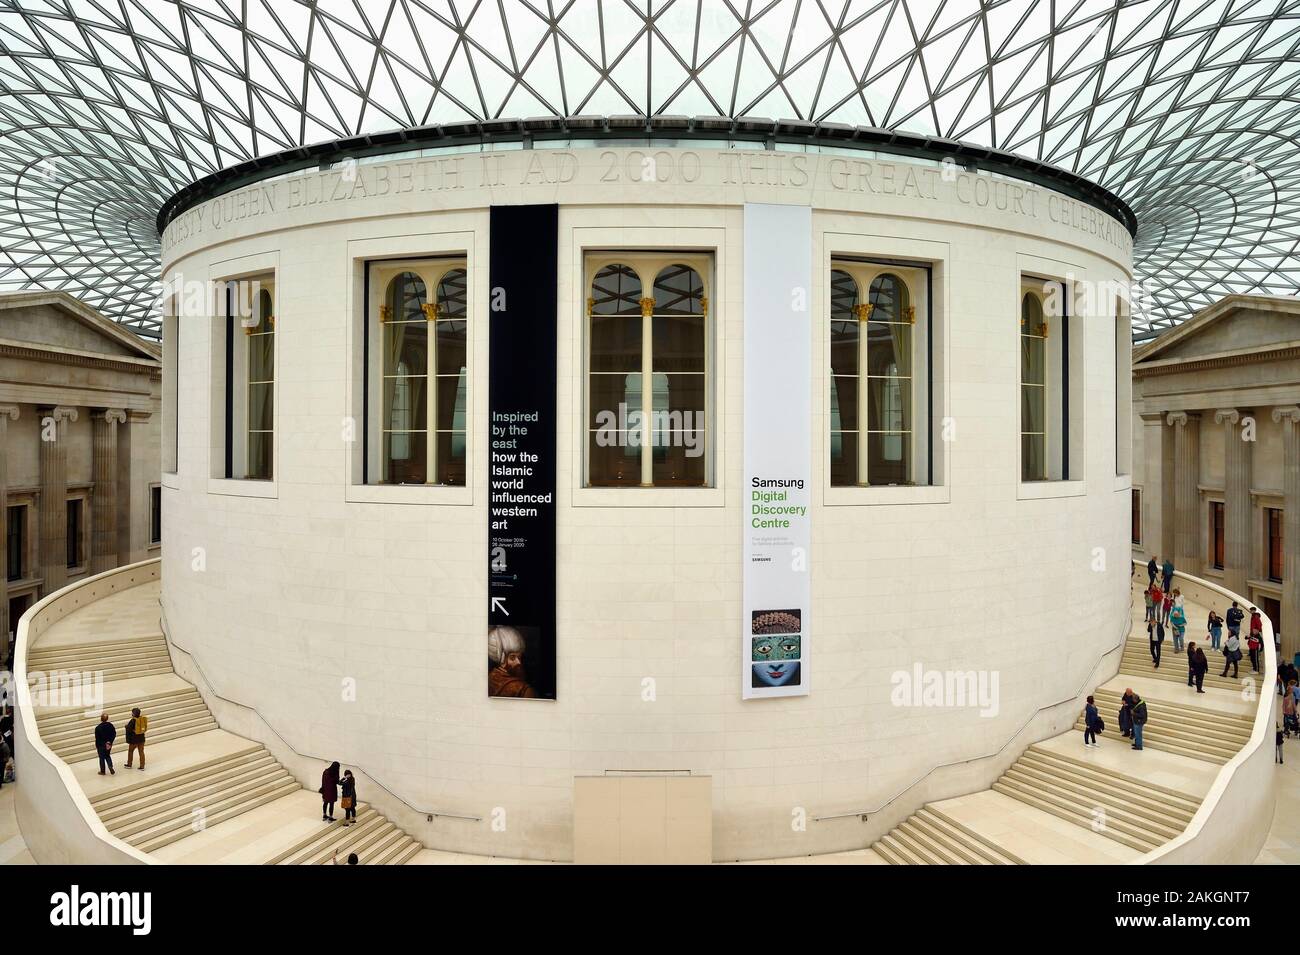 Royaume-uni, Londres, Bloomsbury, le British Museum, Queen Elizabeth II Great Court conçu par cabinet d'architecture Foster and Partners Banque D'Images